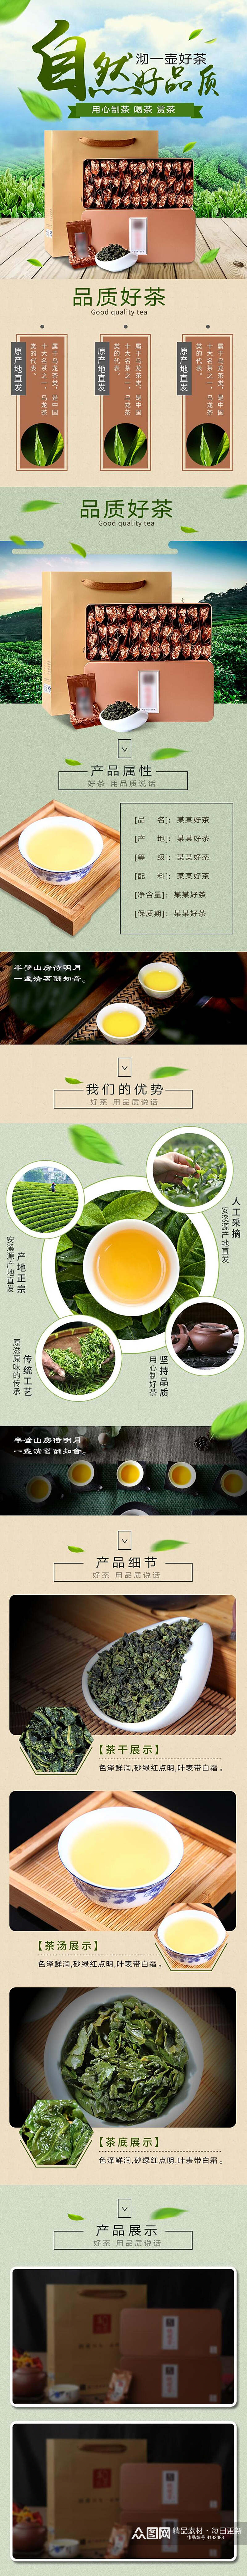 自然好品质茶叶详情页素材